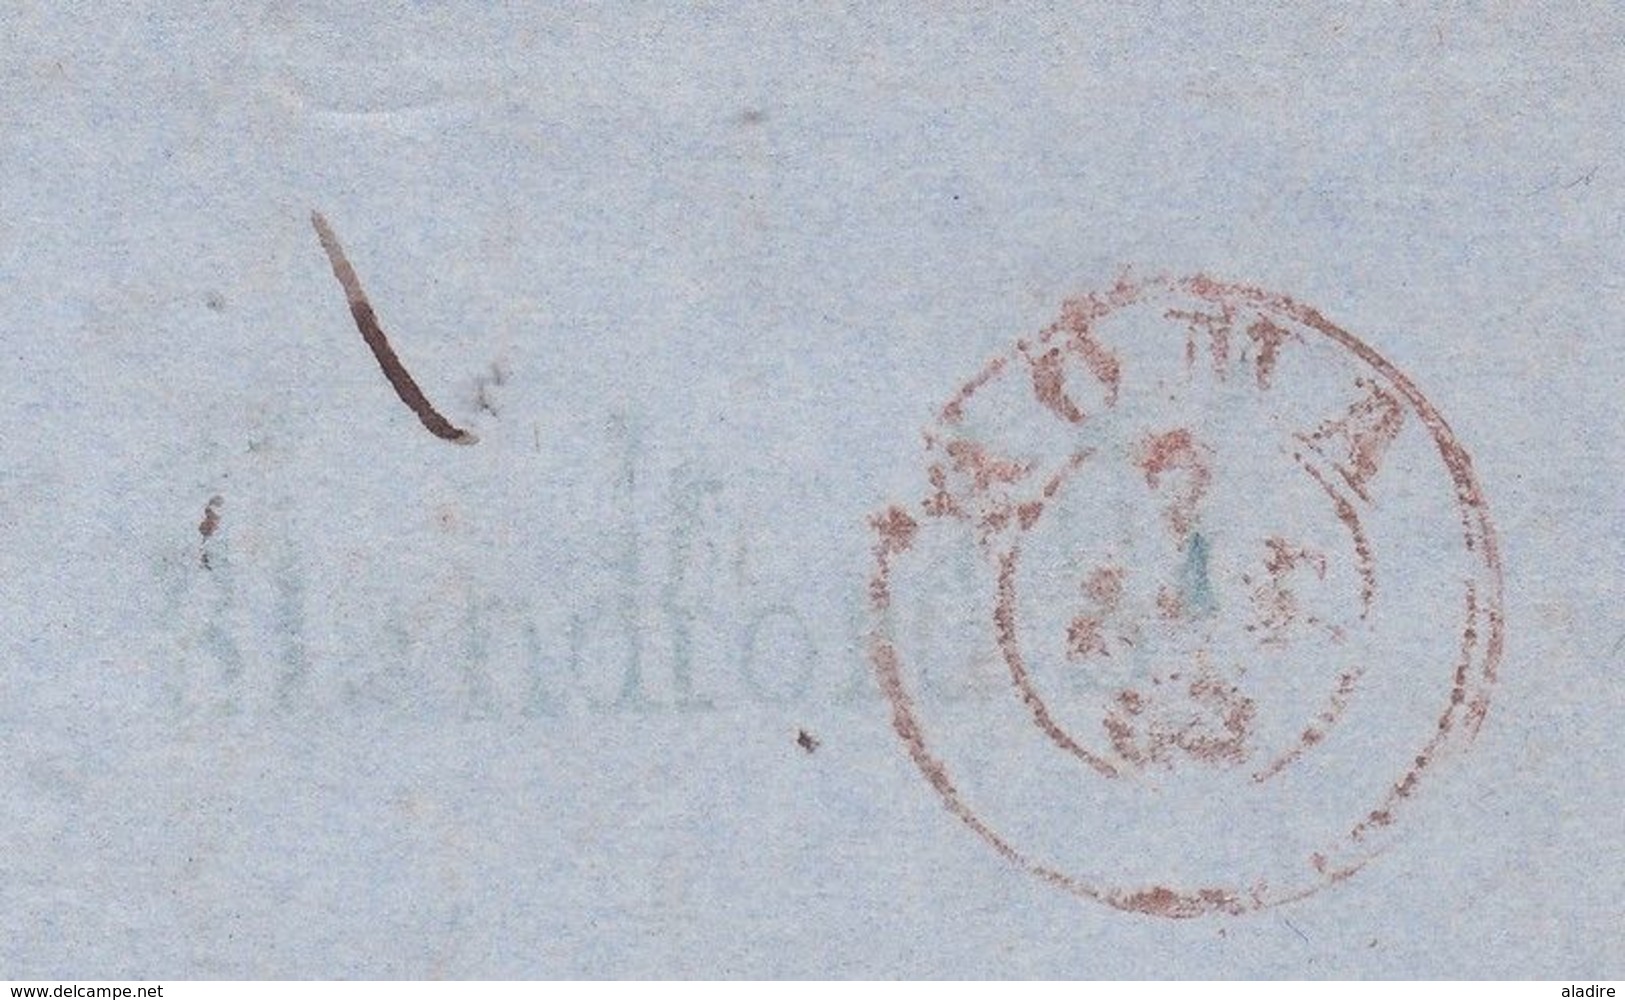 1855 Lettre avec correspondance amicale de 3 pages en italien de Londres, GB vers Rome Roma Italia Italie via France